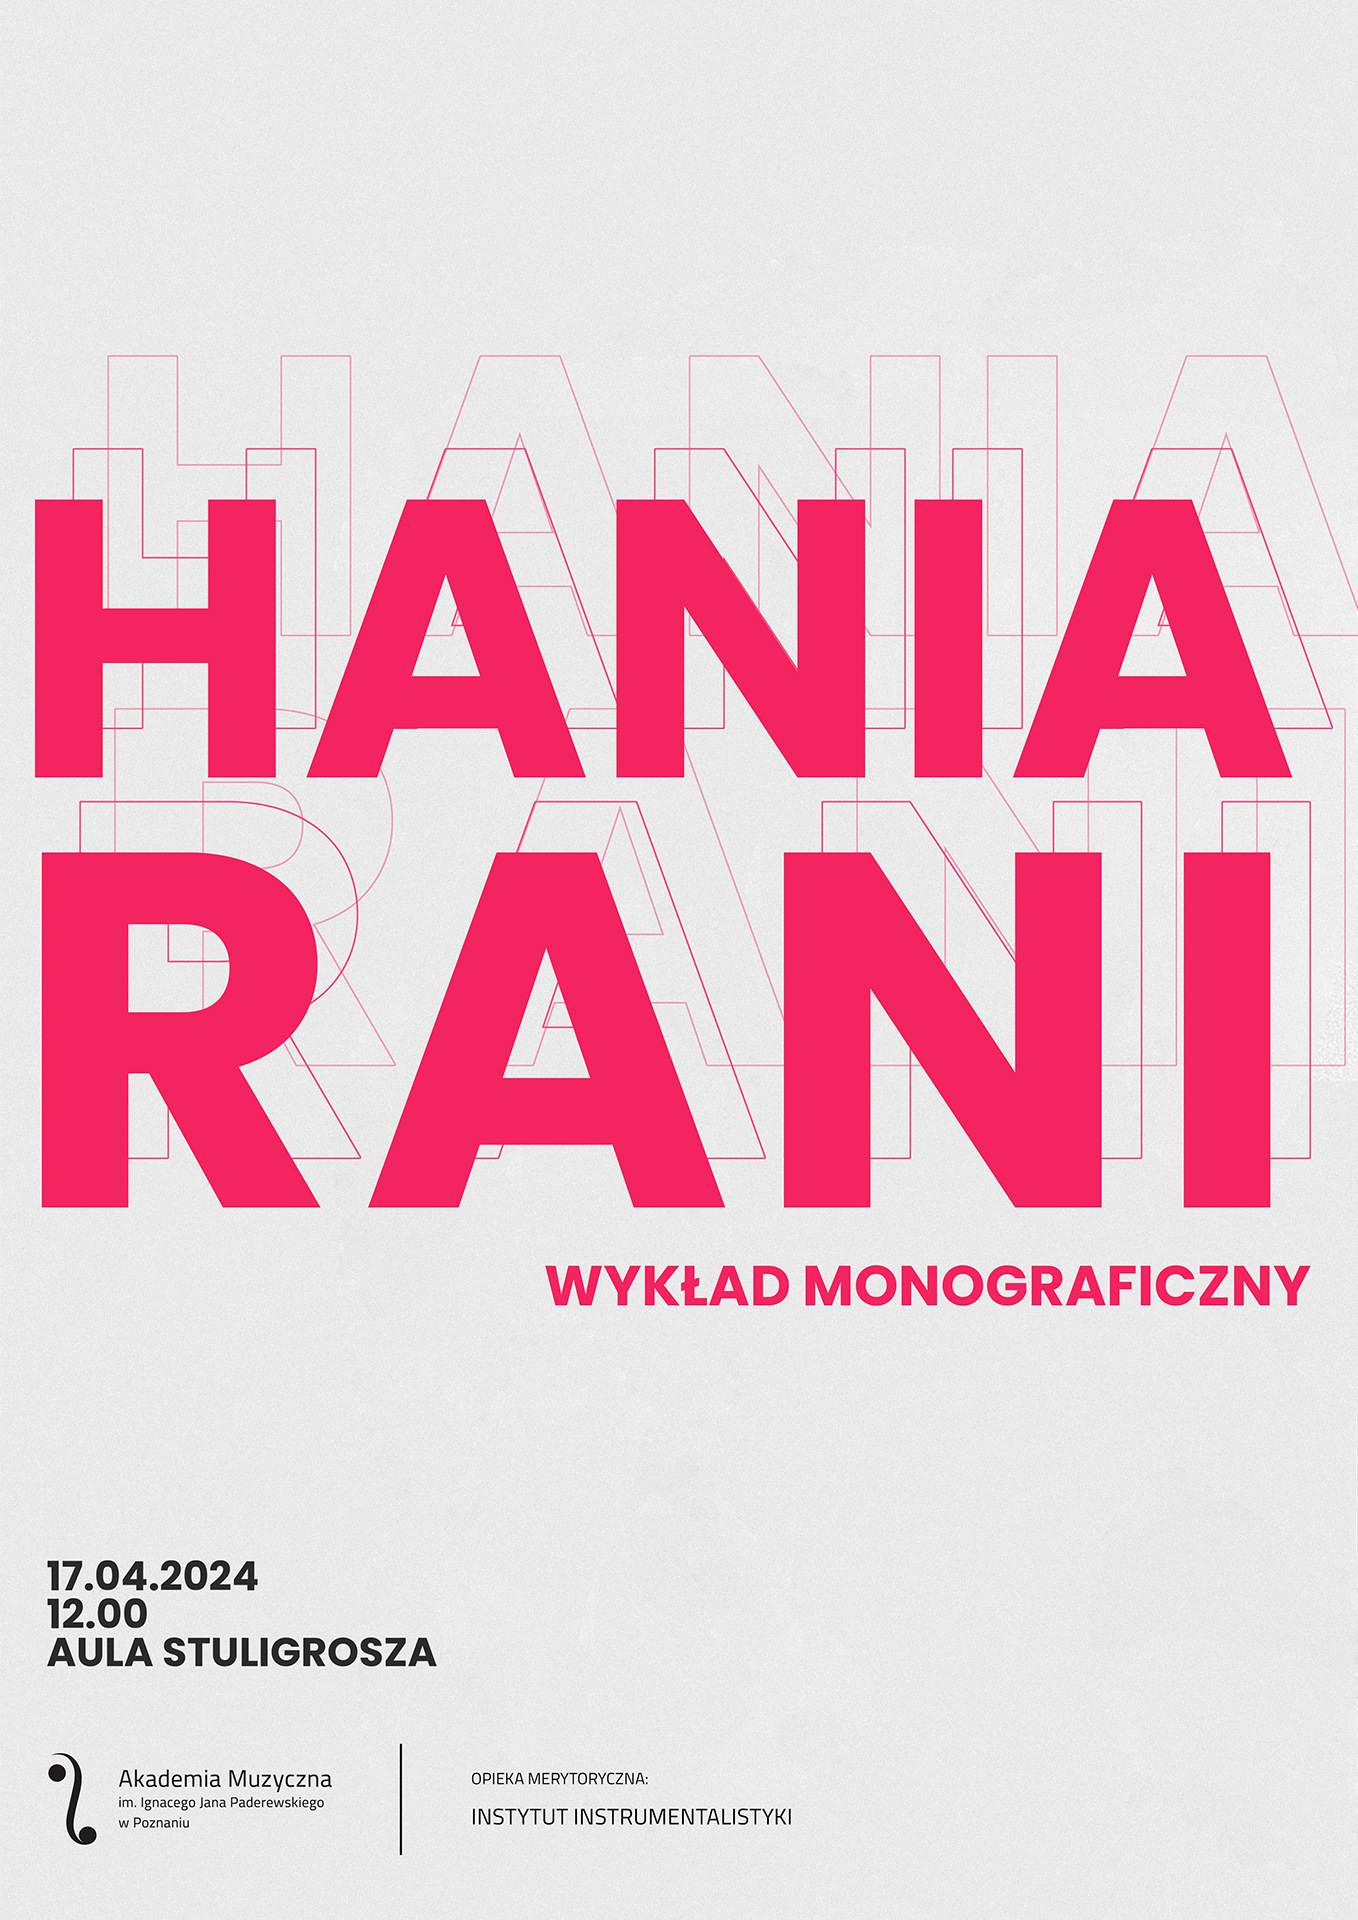 Afisz zawiera informacje na temat wykładu monograficznego Hani Rani